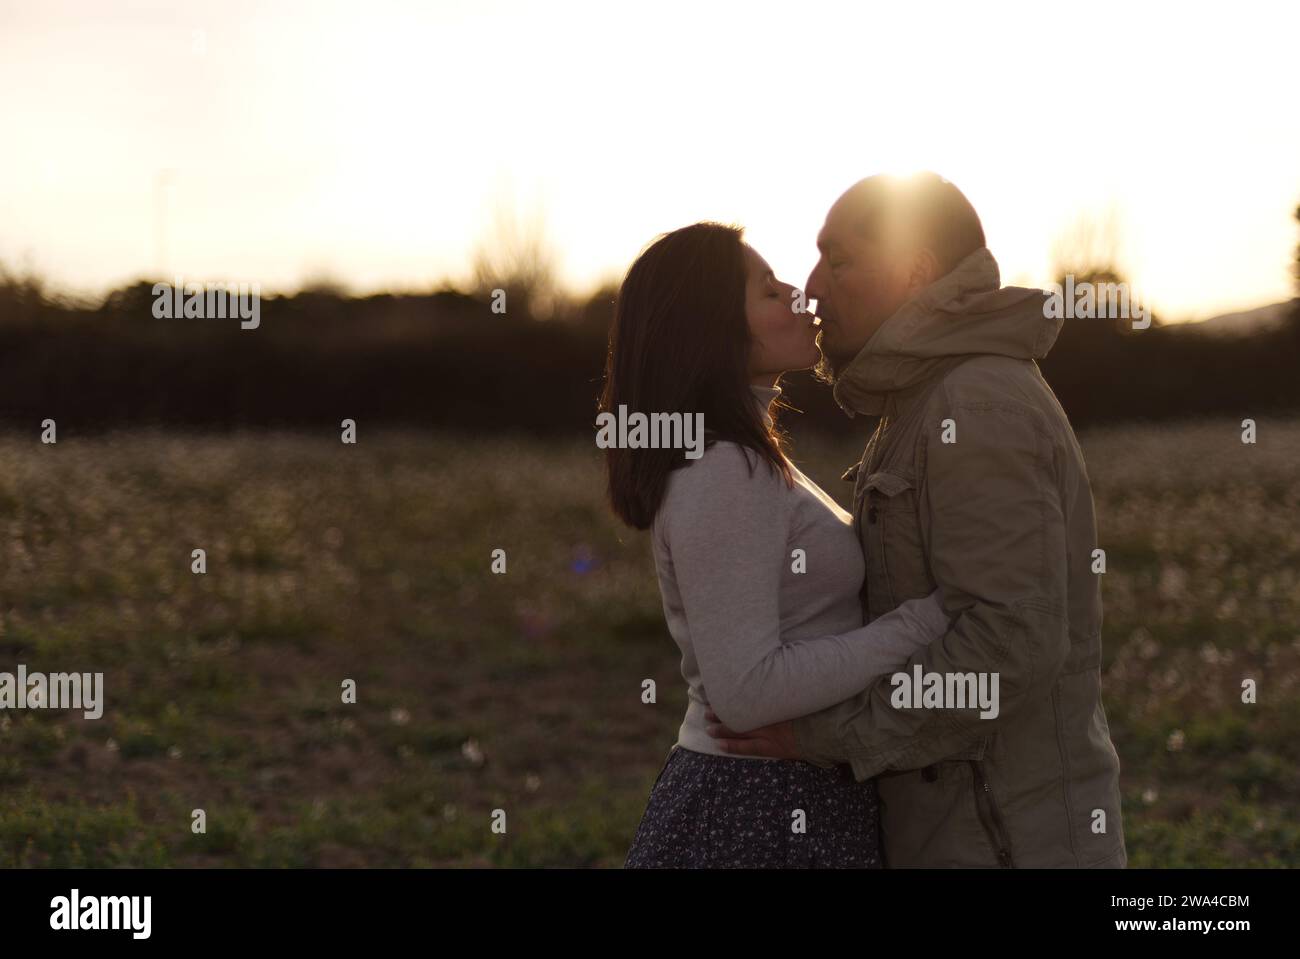 Un homme embrasse et embrasse sa petite amie au coucher du soleil dans un environnement naturel. Banque D'Images